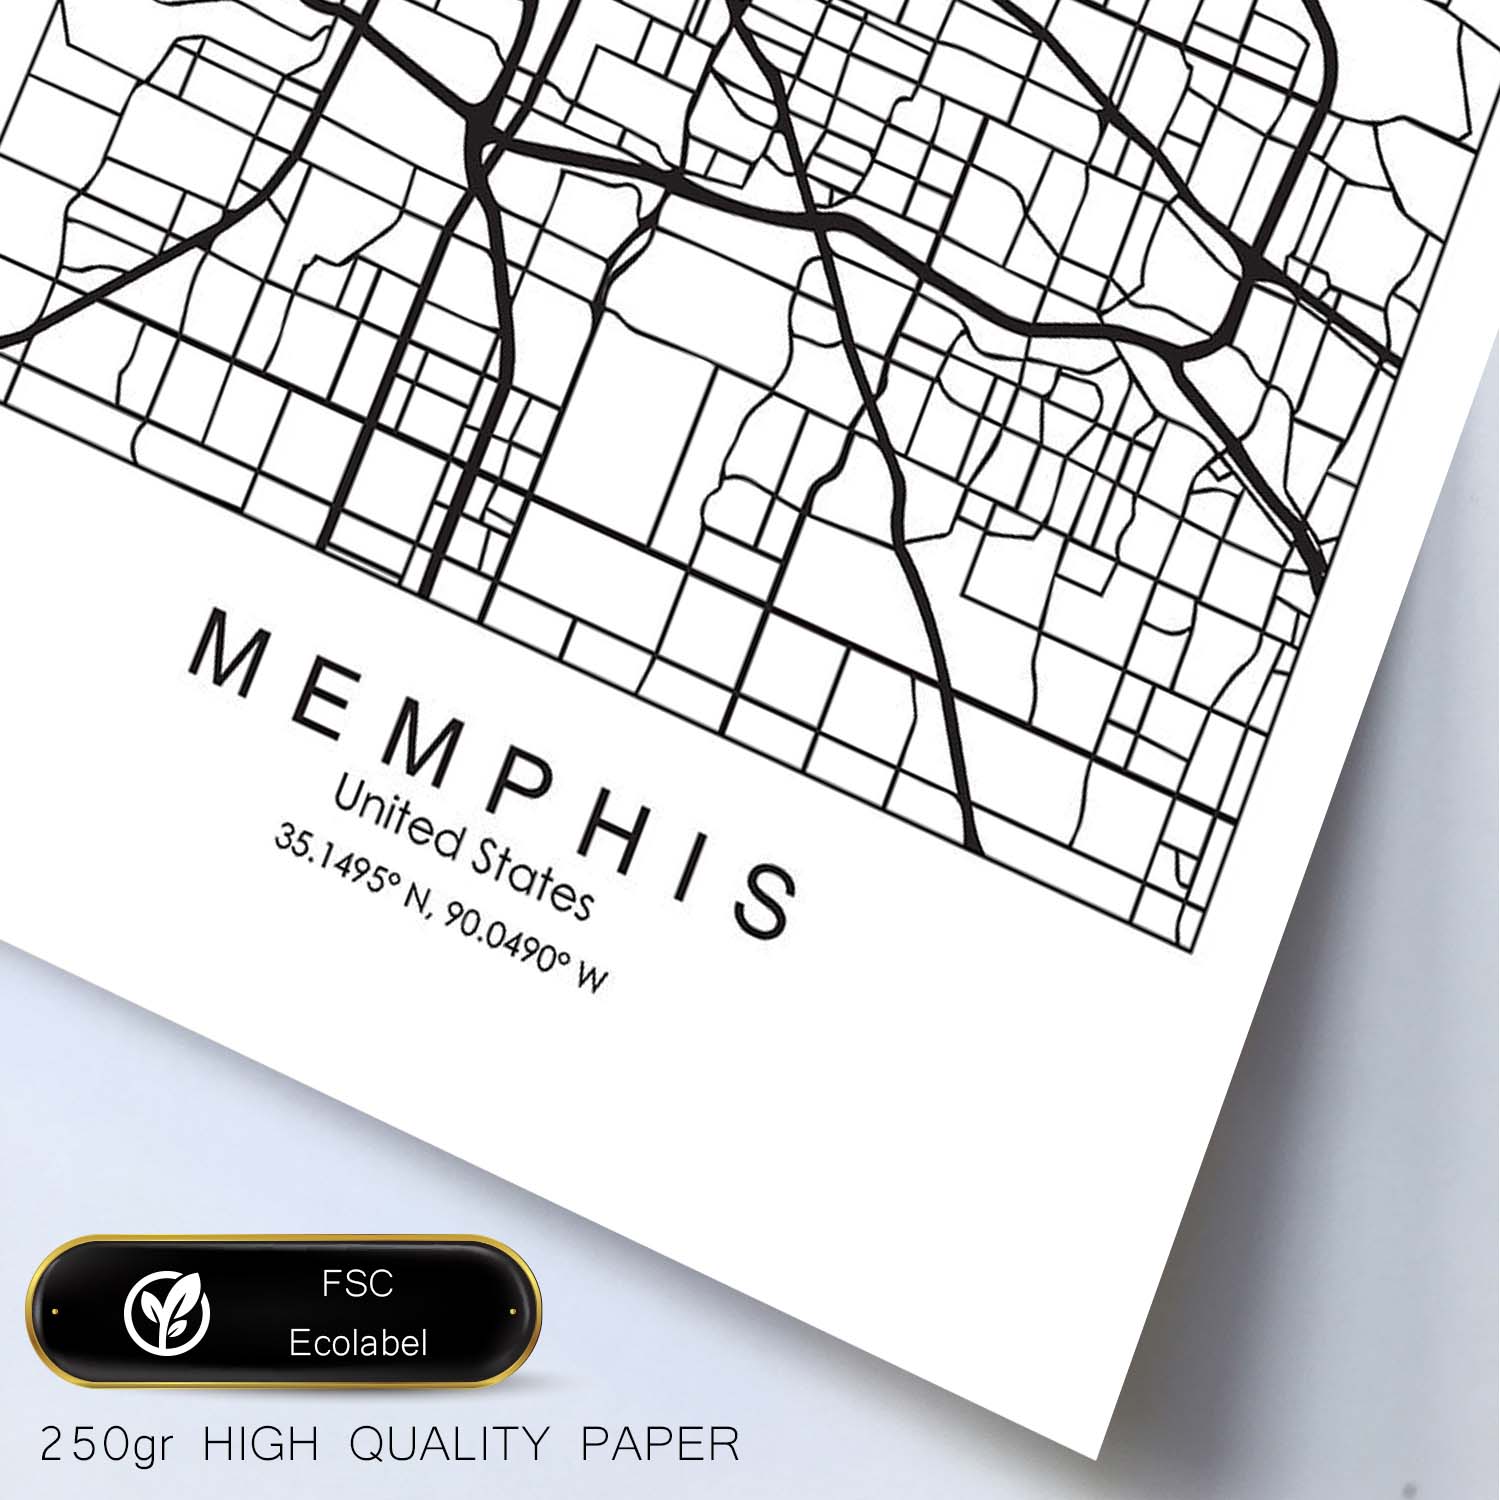 Poster con mapa de Memphis. Lámina de Estados Unidos, con imágenes de mapas y carreteras-Artwork-Nacnic-Nacnic Estudio SL